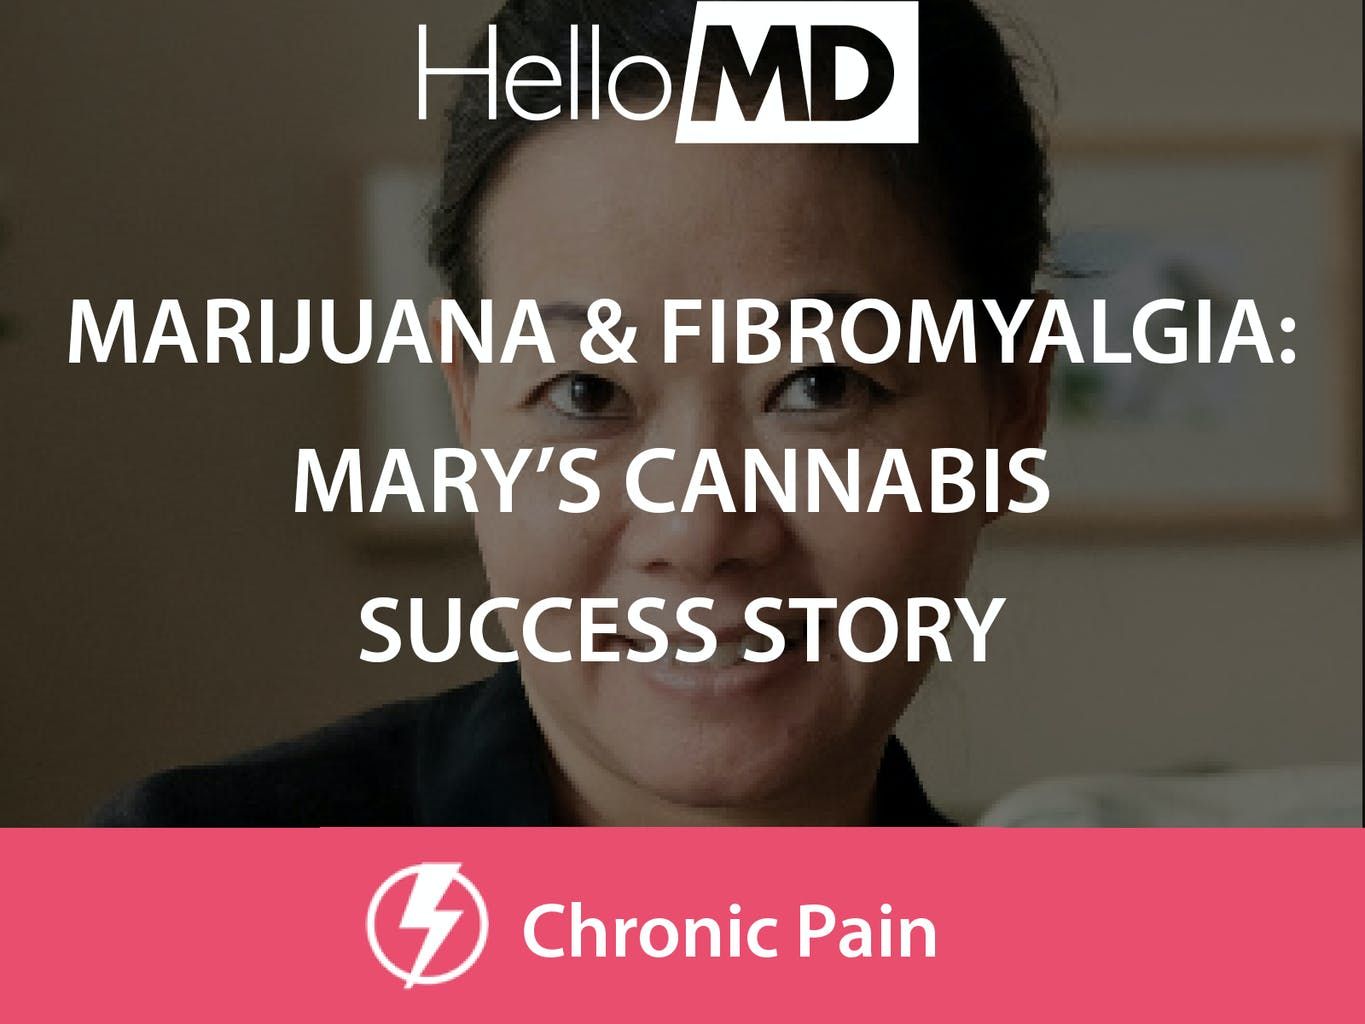 marijuana_and_fibromyalgia_marys_success_story_4a0bfda04a